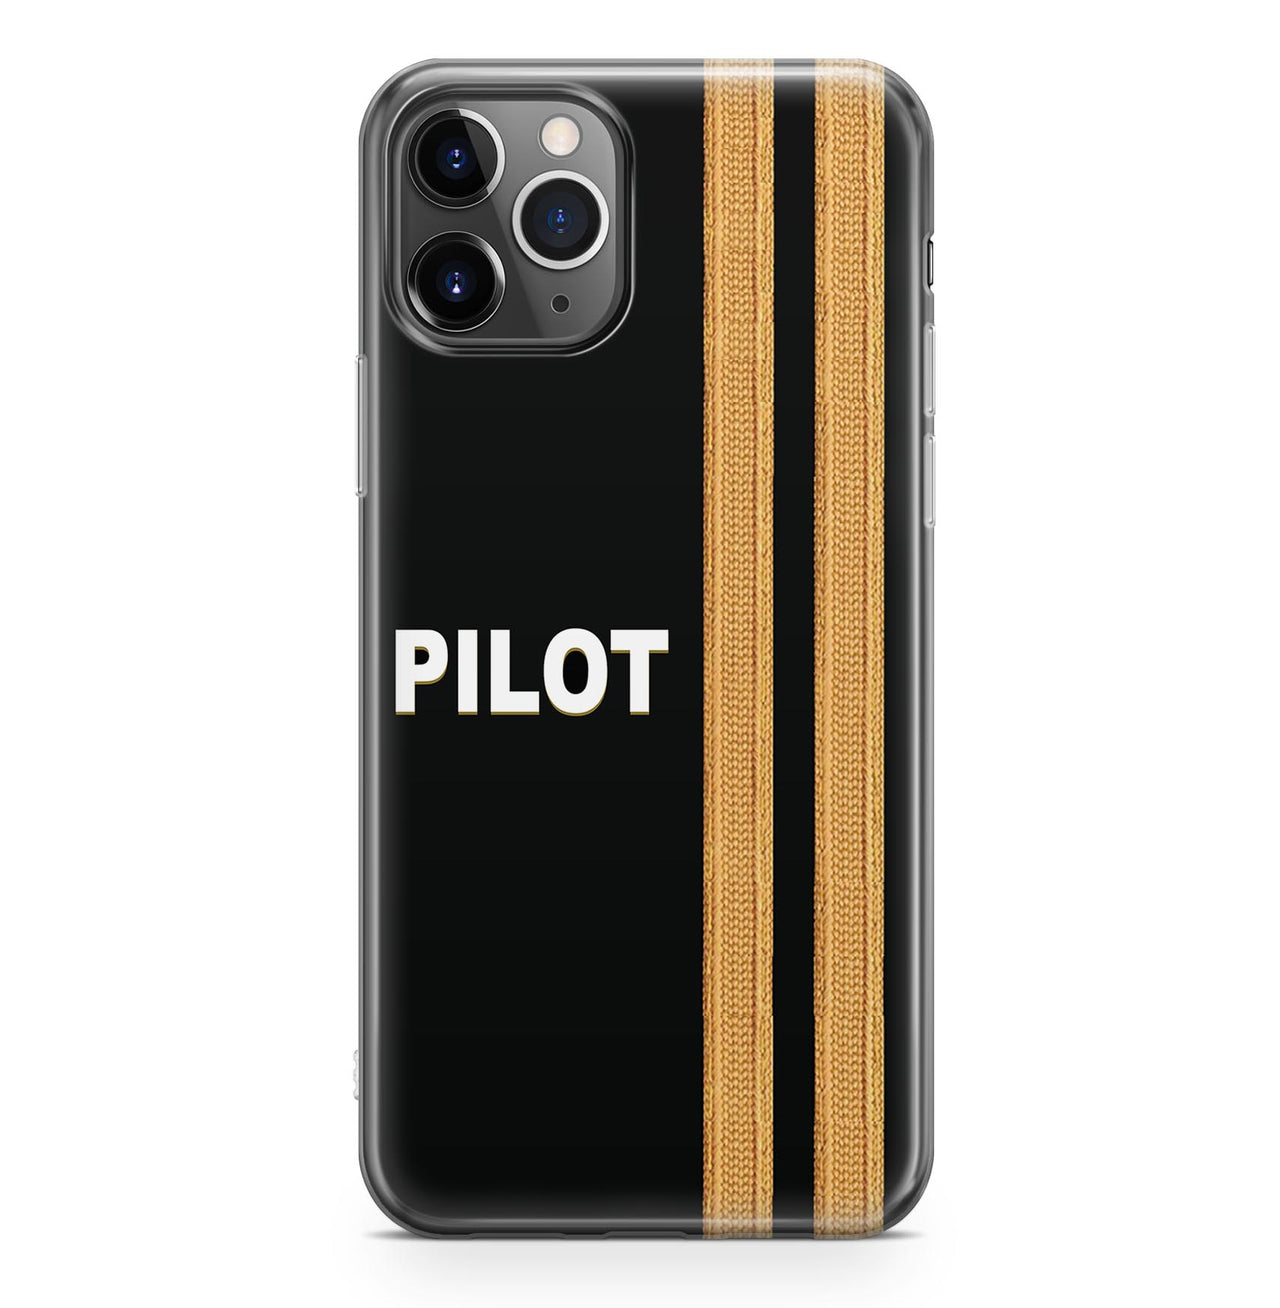 Pilot & Epaulettes Designed iPhone Cases